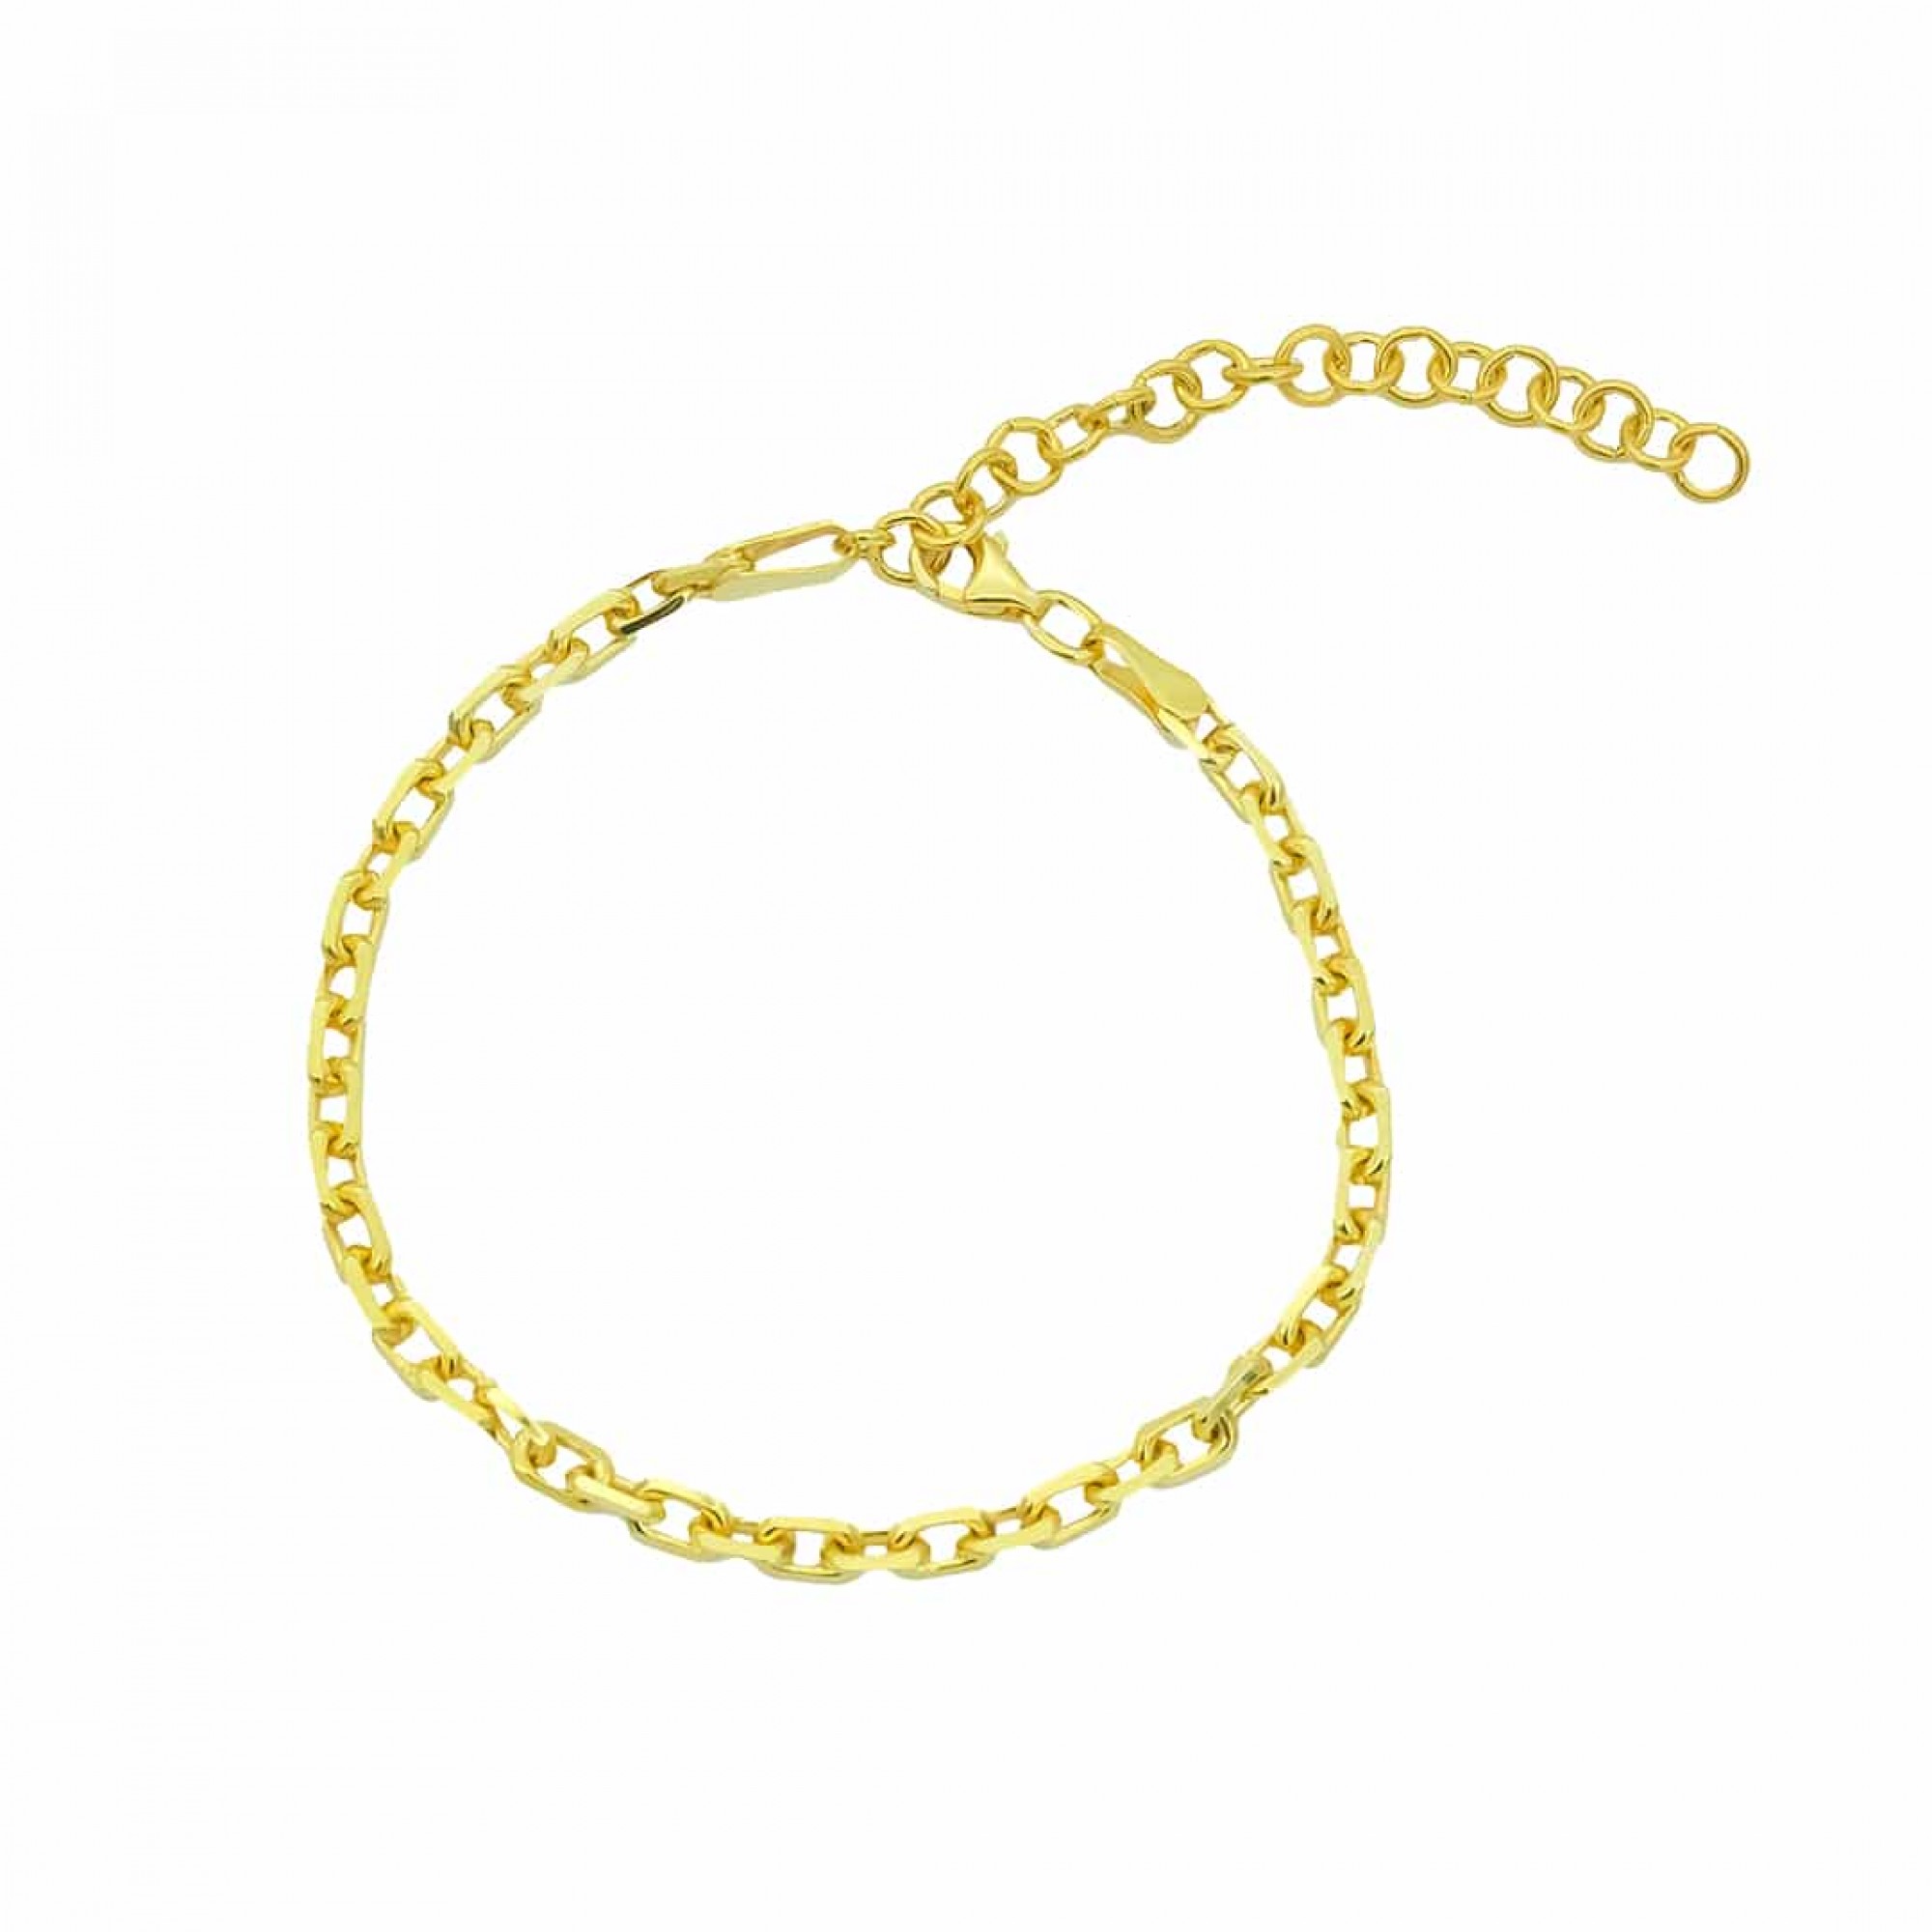 Silber Armkette/Armband 925 Armschmuck in Gold oder Silber ideal als  Geschenk - FashionJuwelier